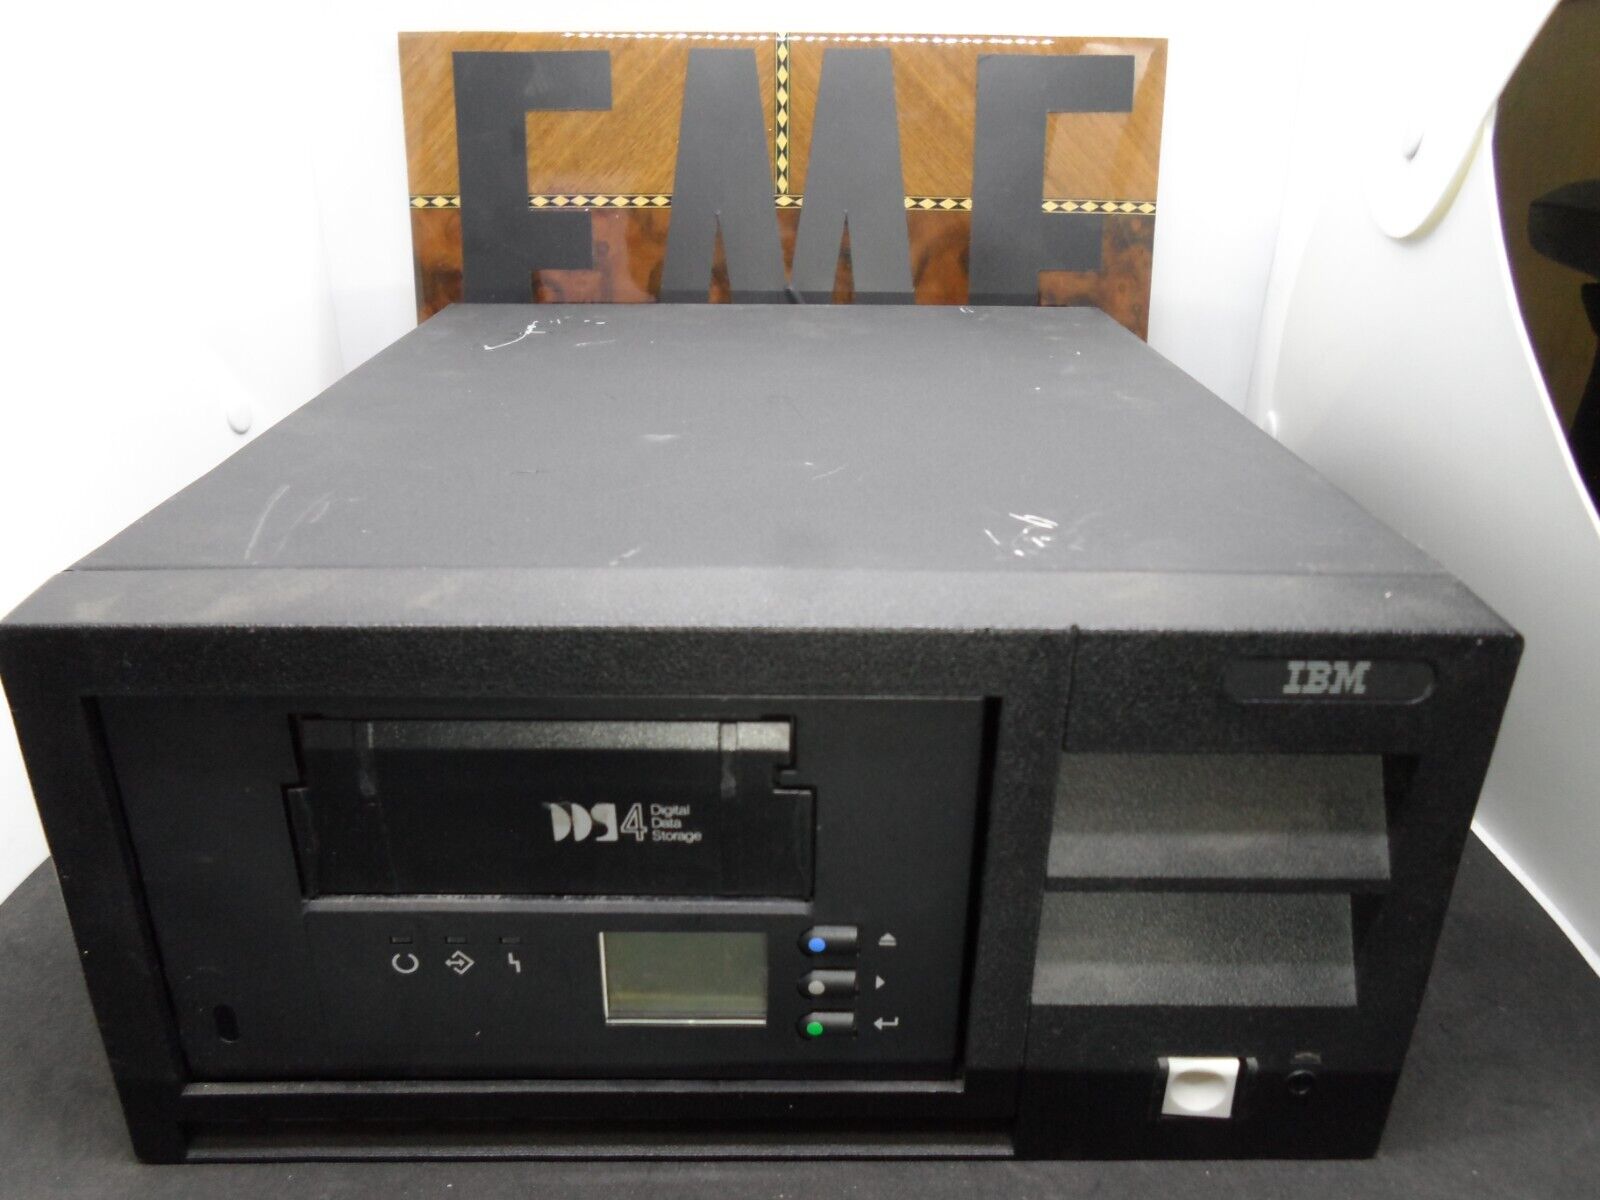 IBM DDS4 DAT40 3503-B1X Tape Drive External AutoLoader 24P2442 PowerButtonBroken